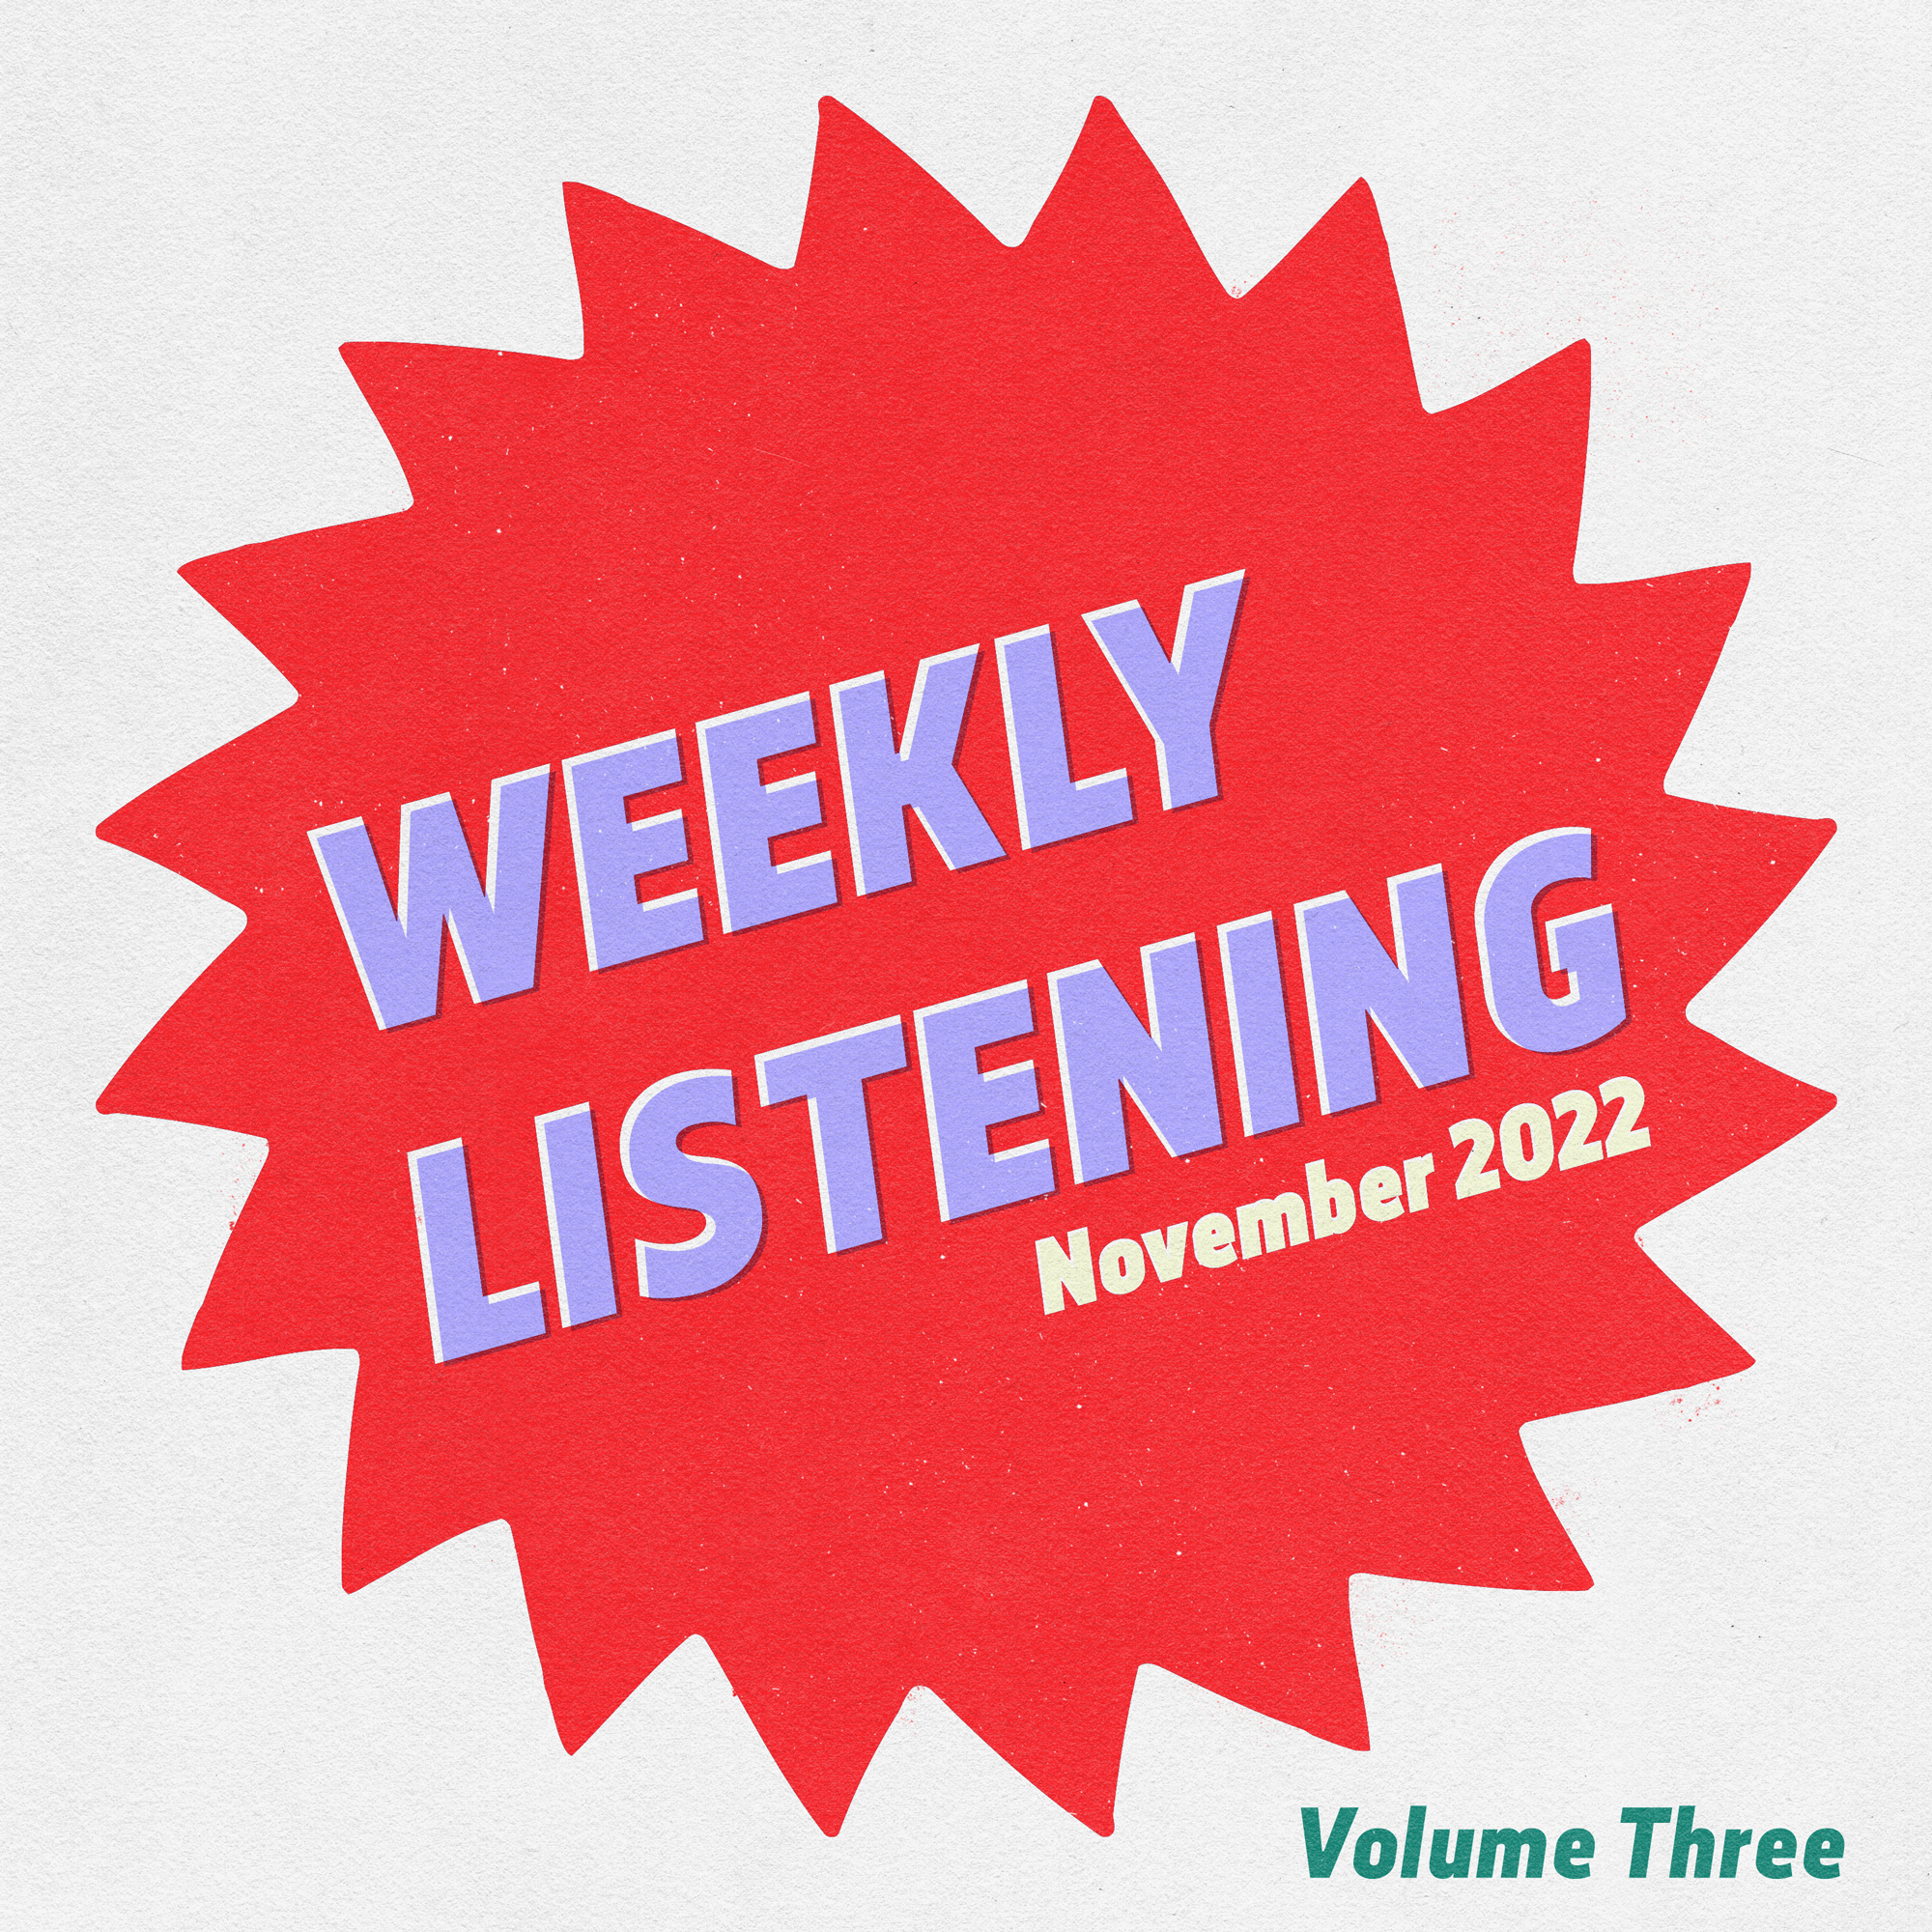 WEEKLY LISTENING November 2022 volume 3